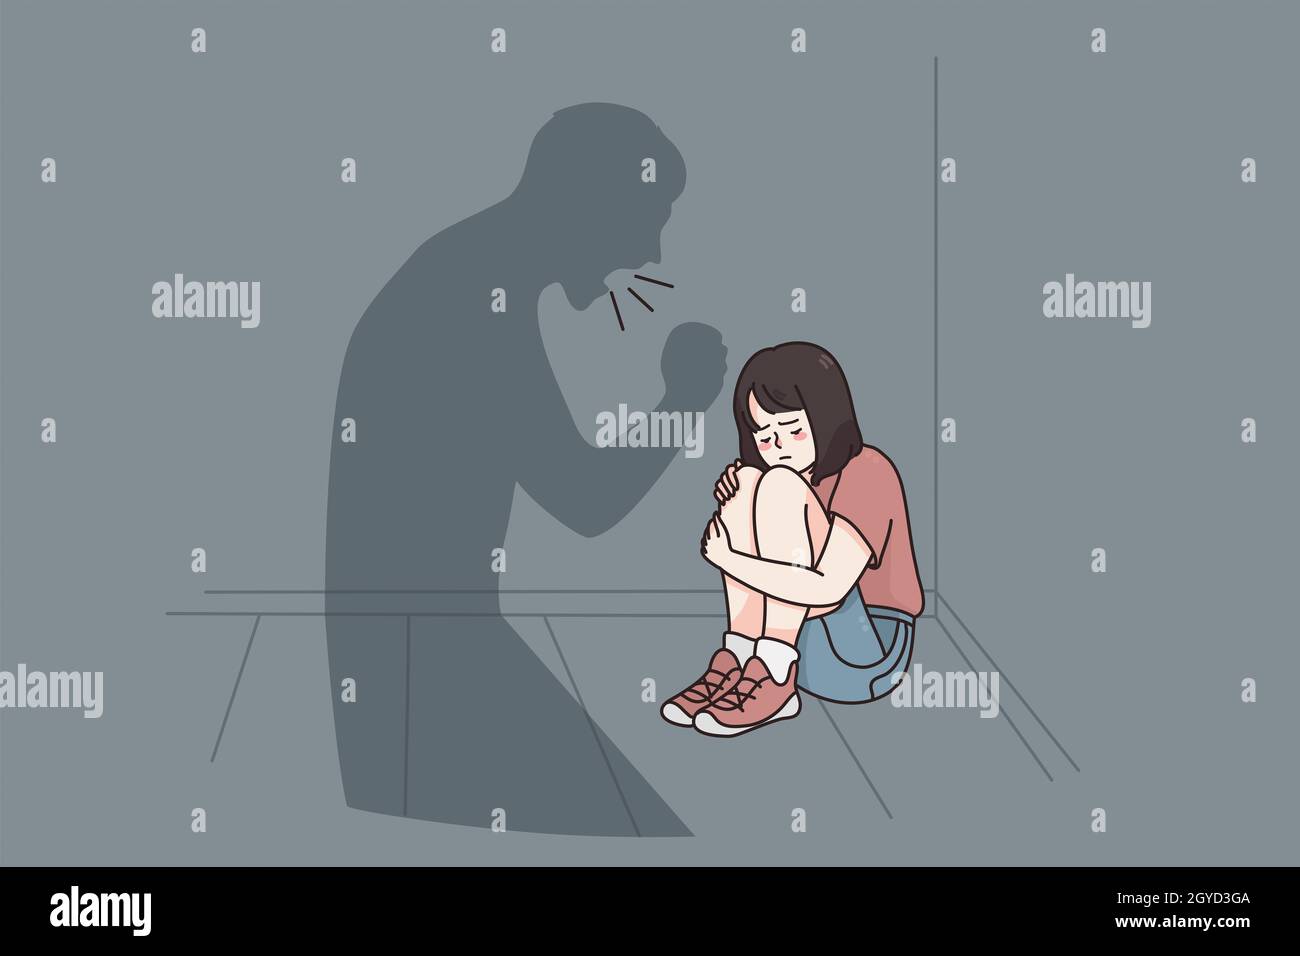 Konzept von Kindesmissbrauch und Angst. Kleine gestresste Mädchen Zeichentrickfigur auf dem Boden sitzend und ihrem Vater lauscht Schatten, der ihr Gefühl verärgert und d anbrüllt Stockfoto